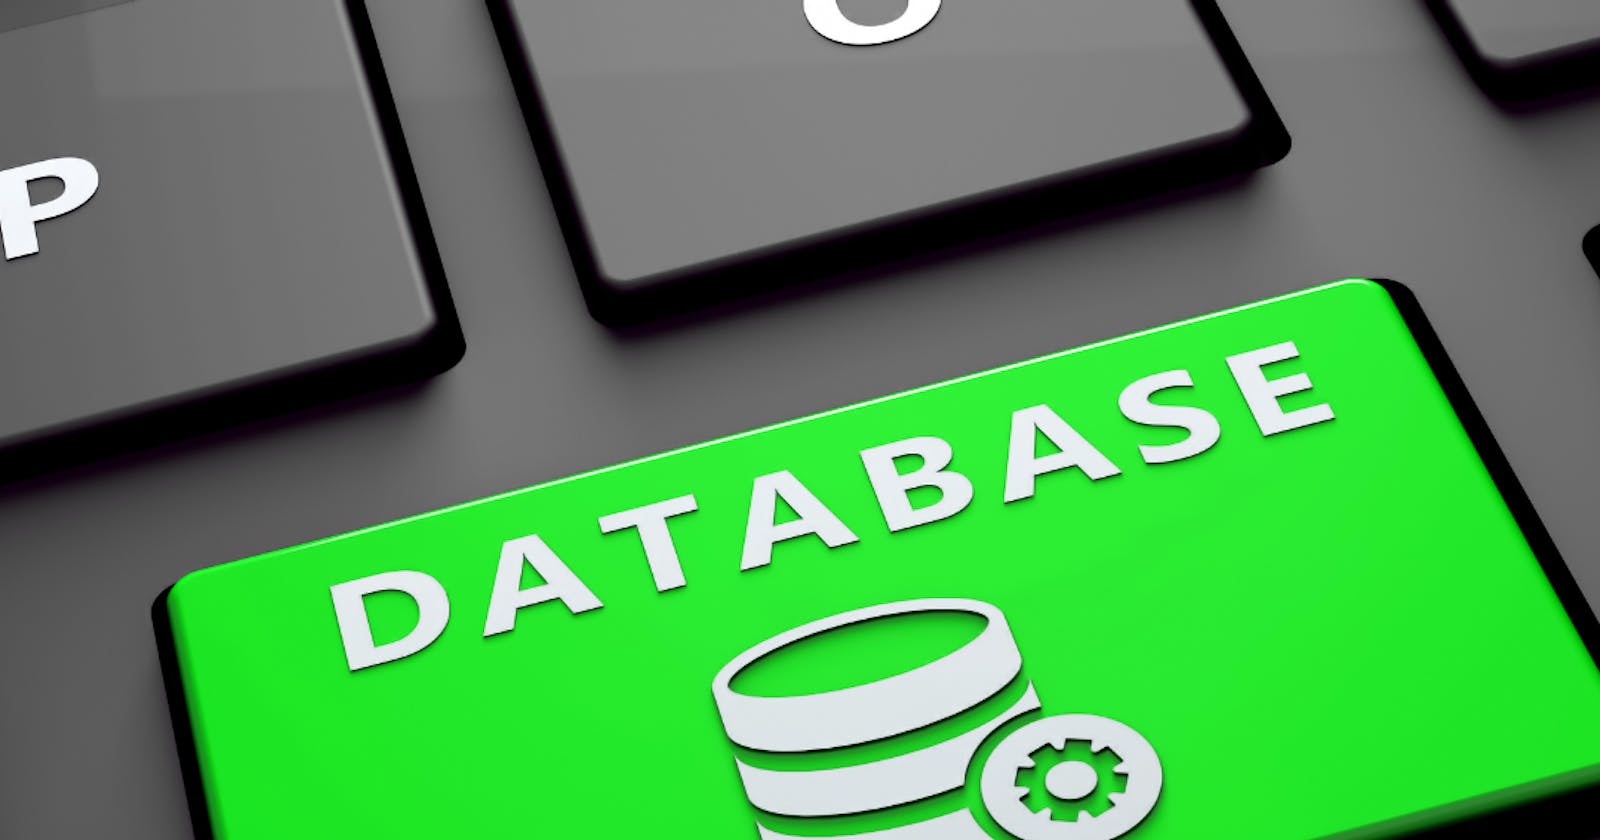 ACID Properties In Databases